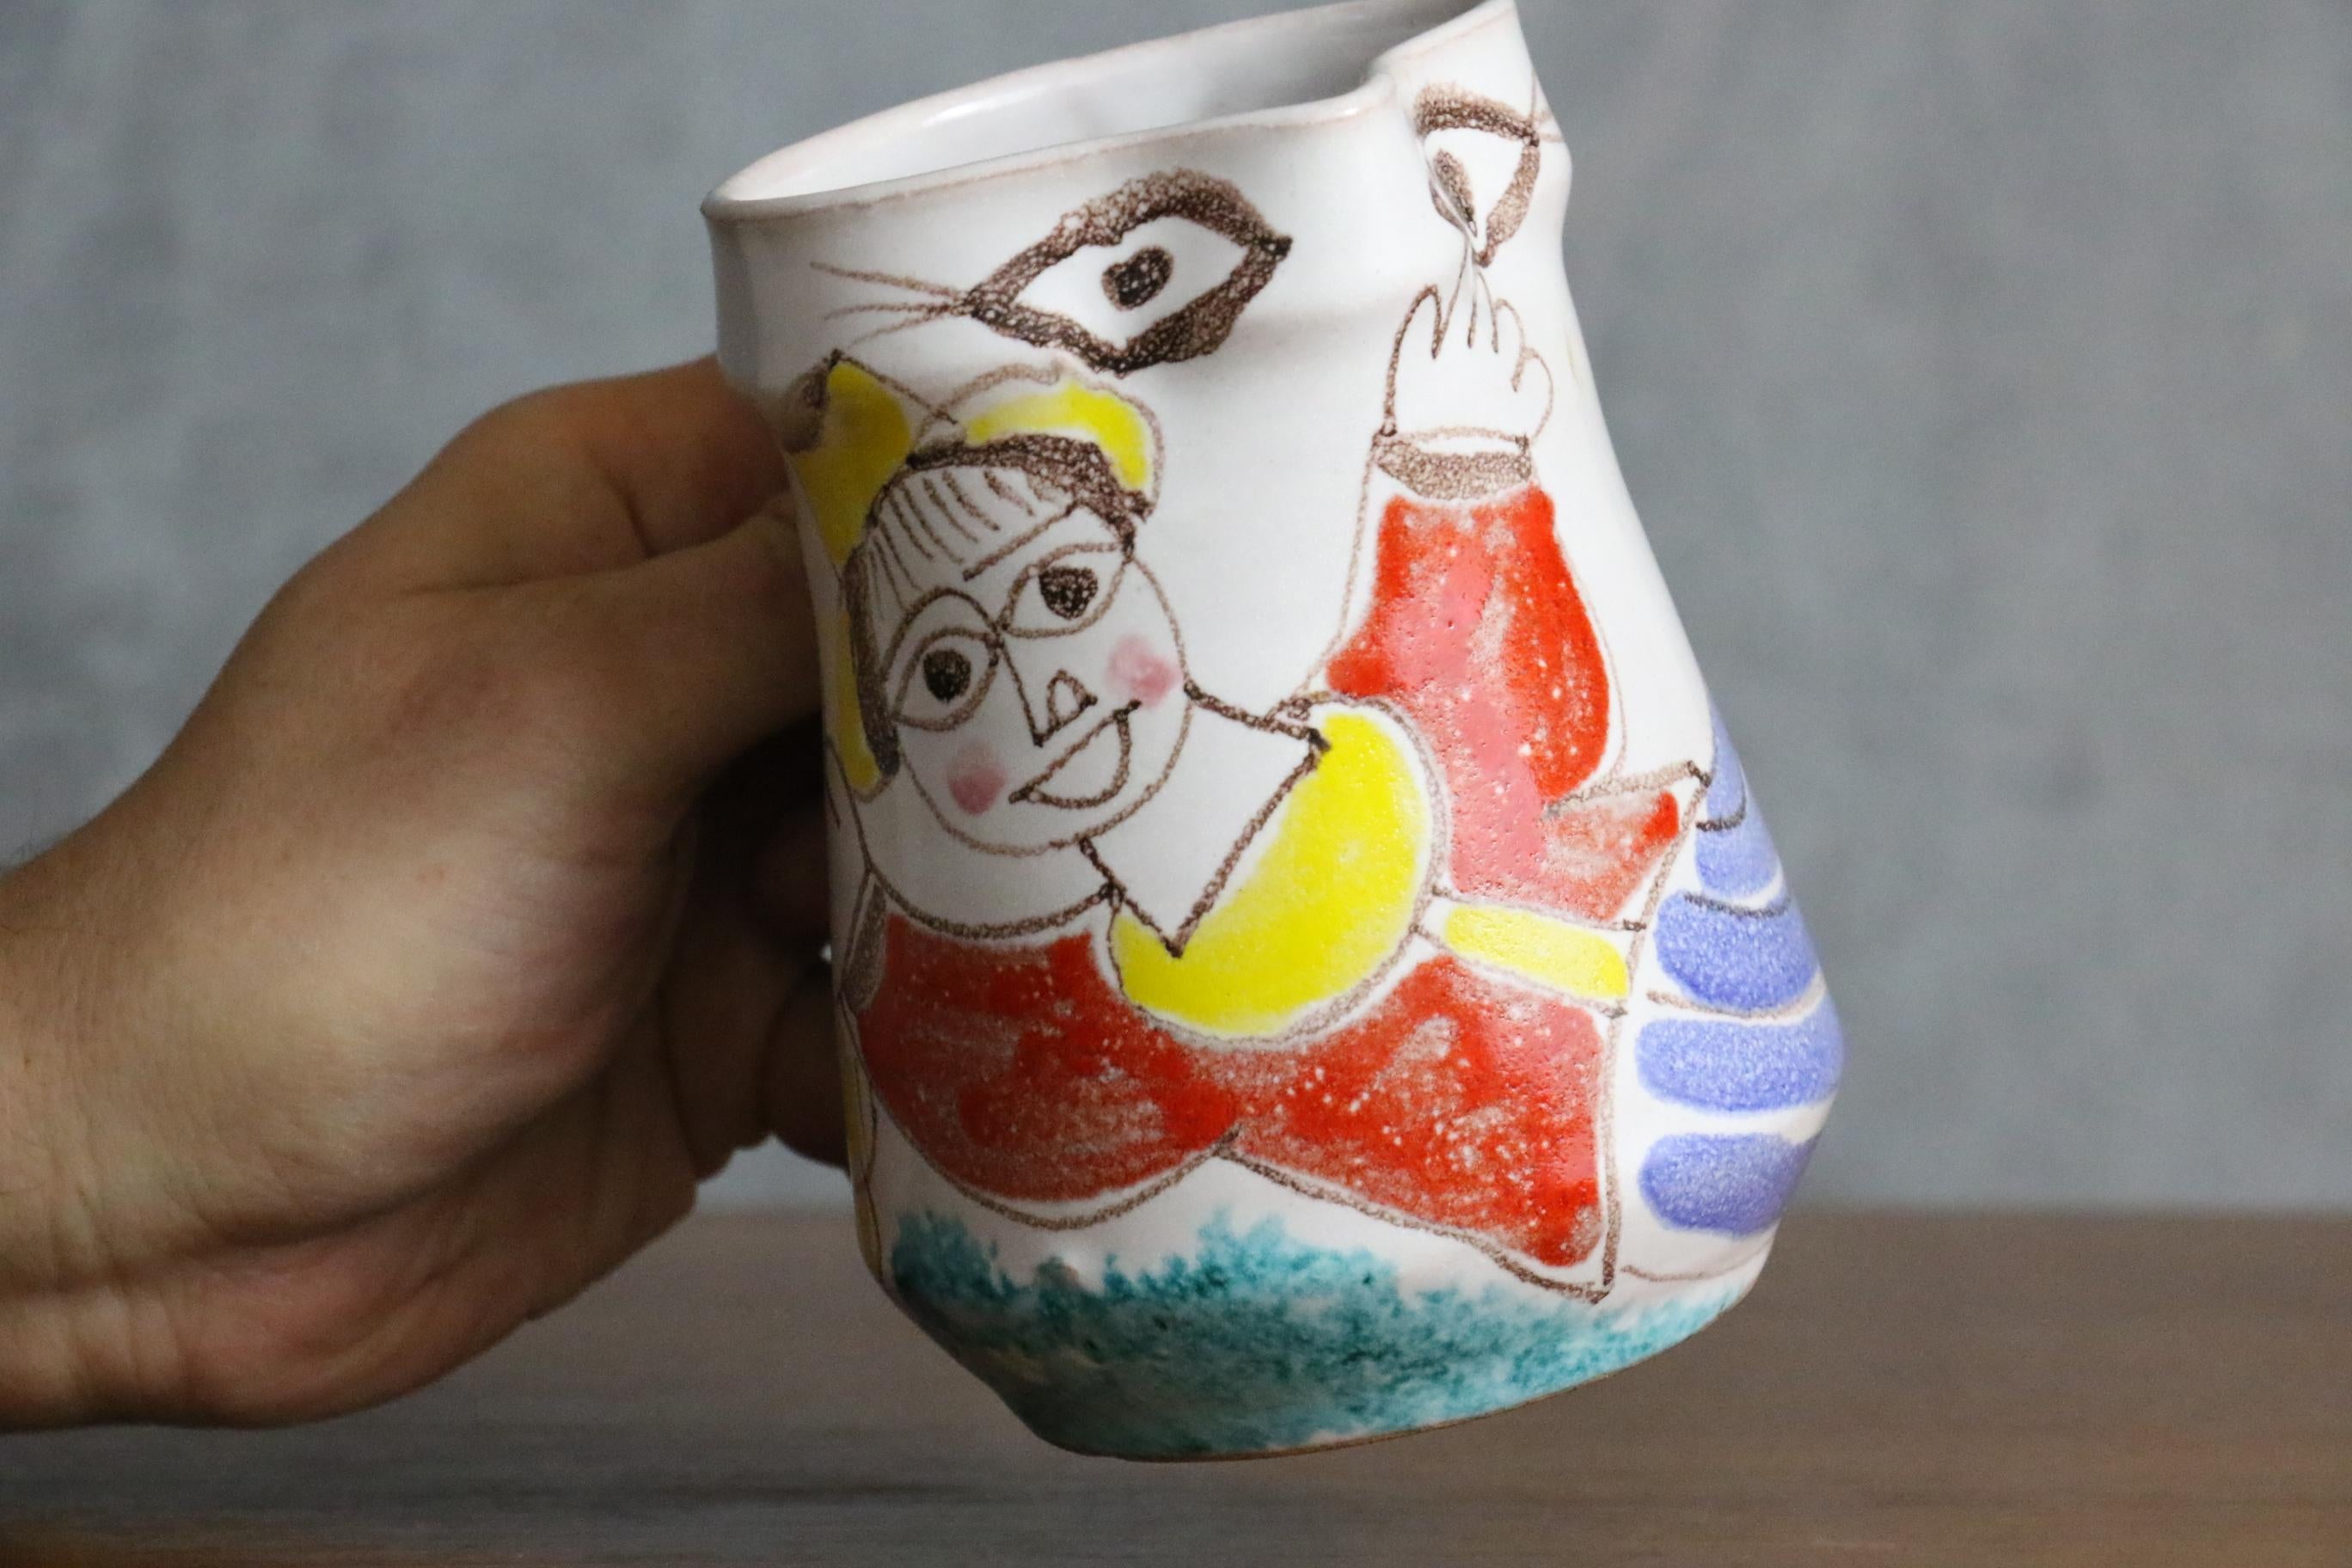 Desimone, handbemalter Keramikkrug, Italienische Keramik, um 1960 - Ära Aldo Londi

Sehr schöner Krug, der einen lachenden Mann mit einer traditionellen italienischen Weinflasche in der Hand darstellt. 

Wie bei Giovanni DeSimone üblich, ist dies